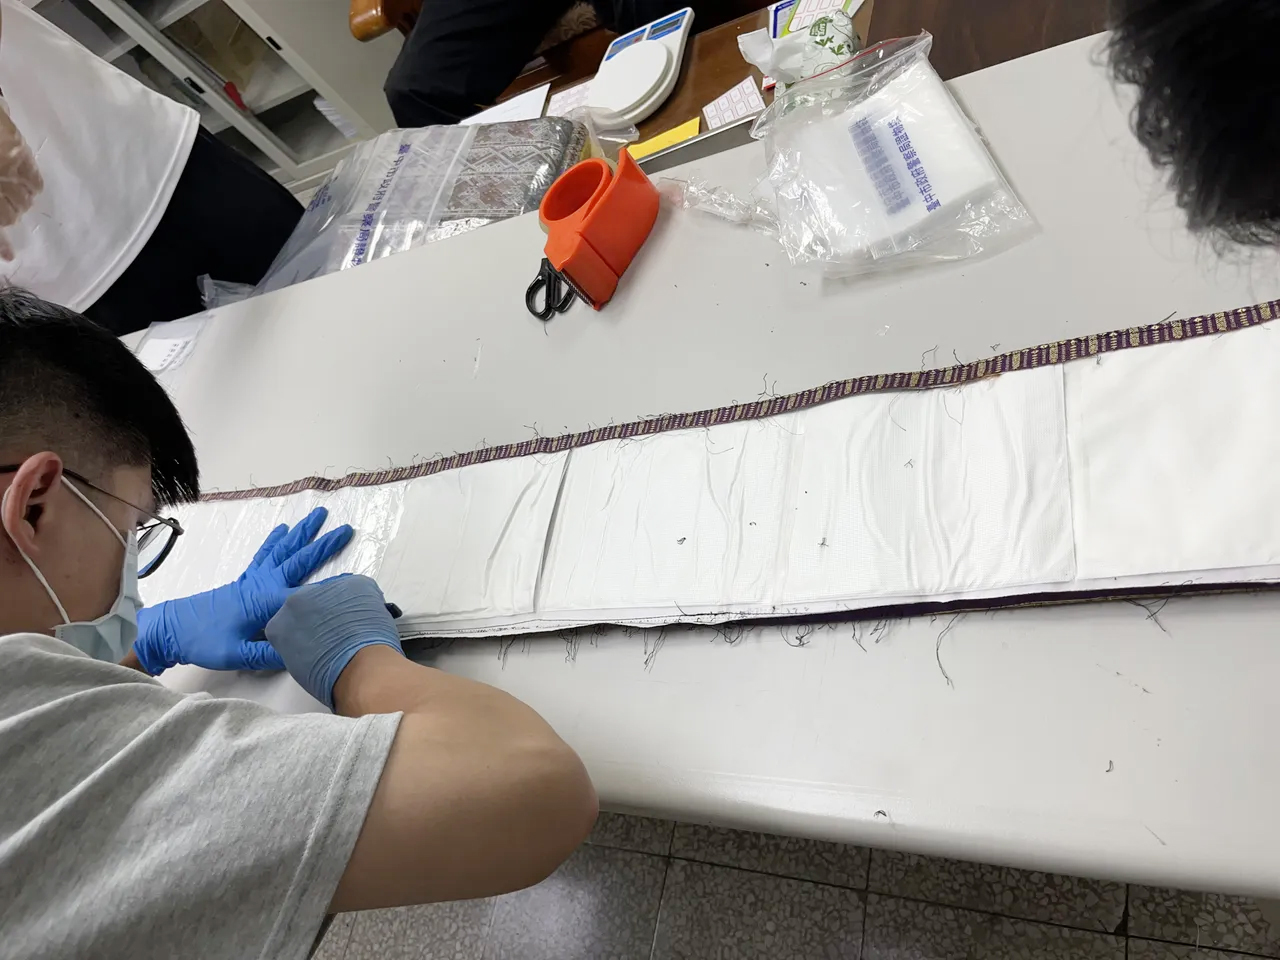 毒品缝进桌旗布 泰女入境台湾被识破 起出13公斤海洛因